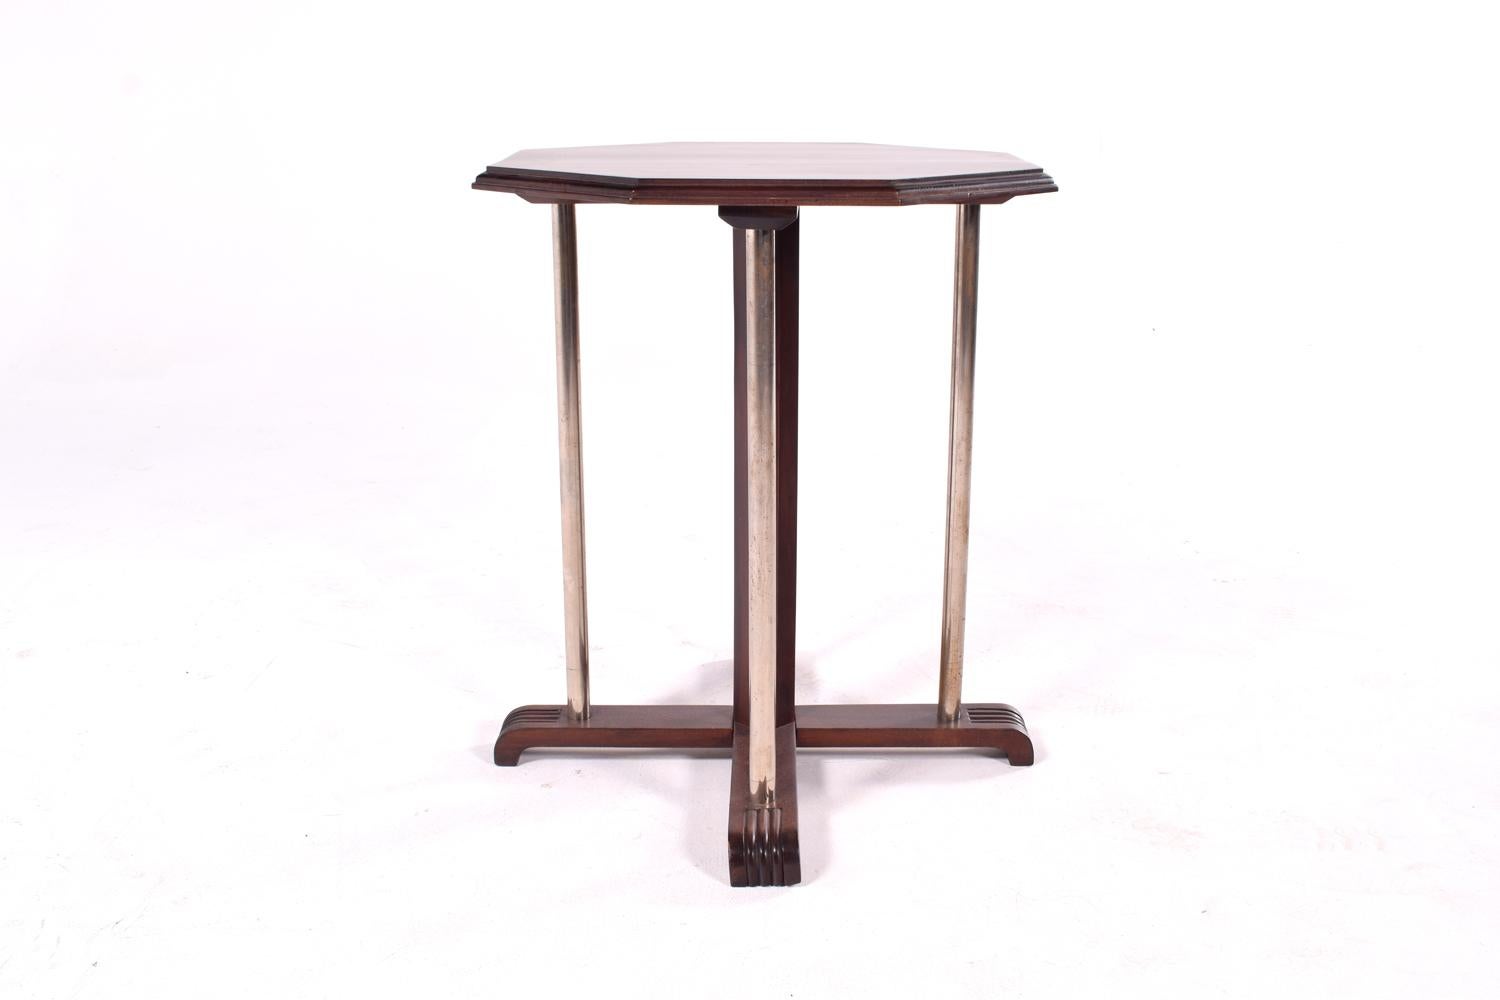 Achteckiger französischer Beistelltisch im Art Deco-Stil, mit einer einzigartigen Kombination aus Aluminiumrohren und Holz zeigt dieser Beistelltisch den Art Deco-Stil. Achteckige Tischplatte aus Mahagoni.